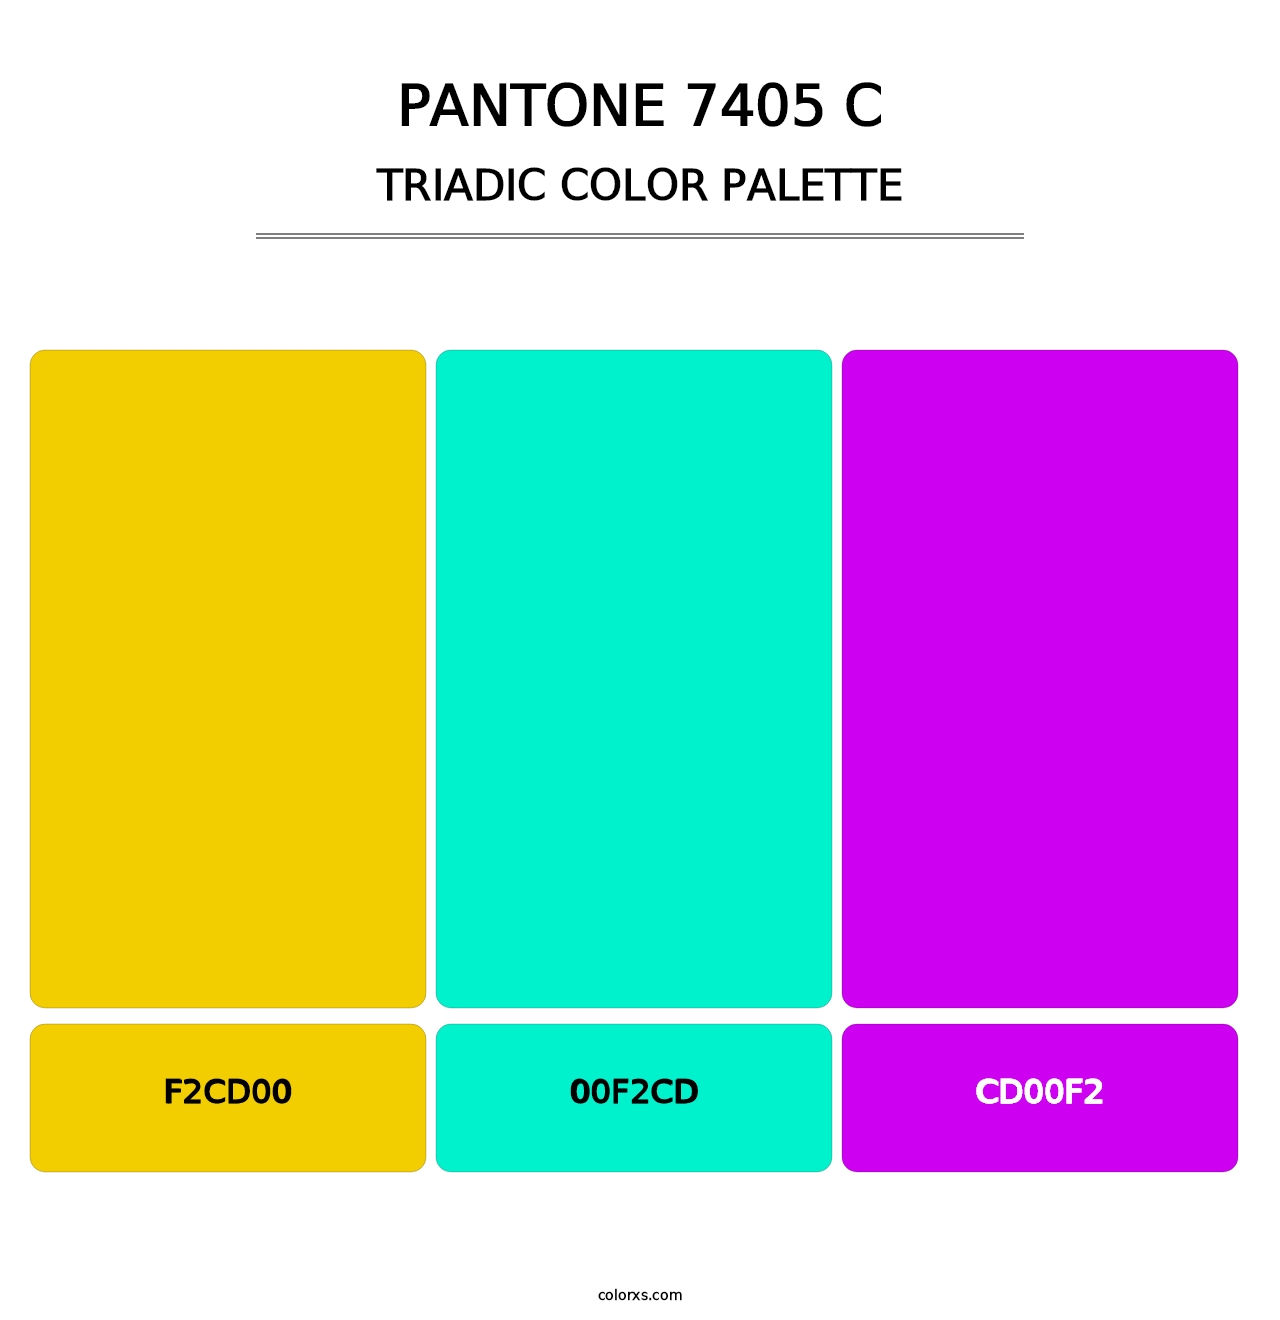 PANTONE 7405 C - Triadic Color Palette